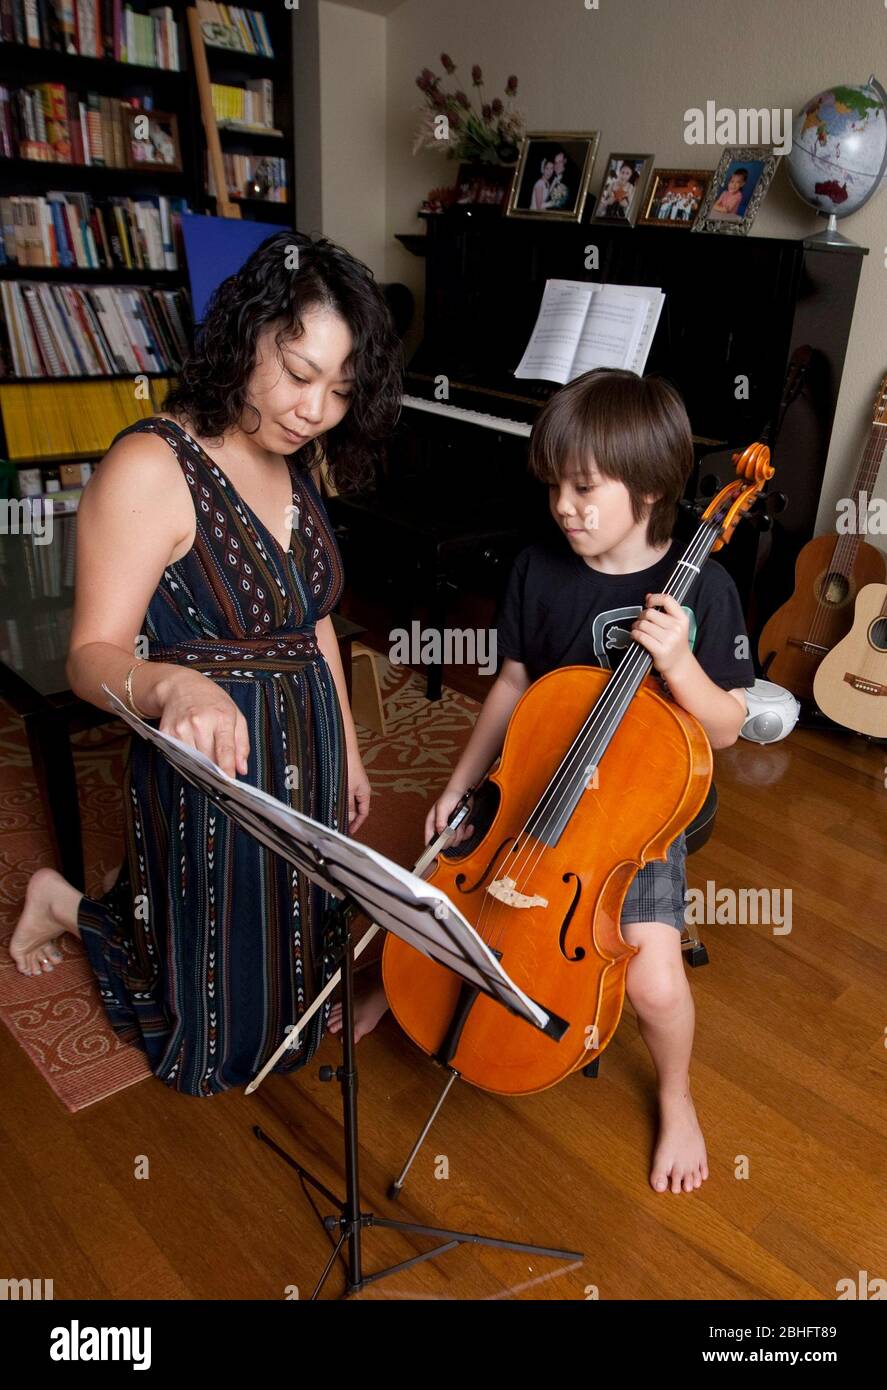 Austin Texas USA, 2012: La madre japonesa instruye a su hijo japonés-americano de 8 años cómo leer partituras mientras practica tocando el violonchelo en casa. ©Marjorie Kamys Cotera/Daemmrich Photography Foto de stock